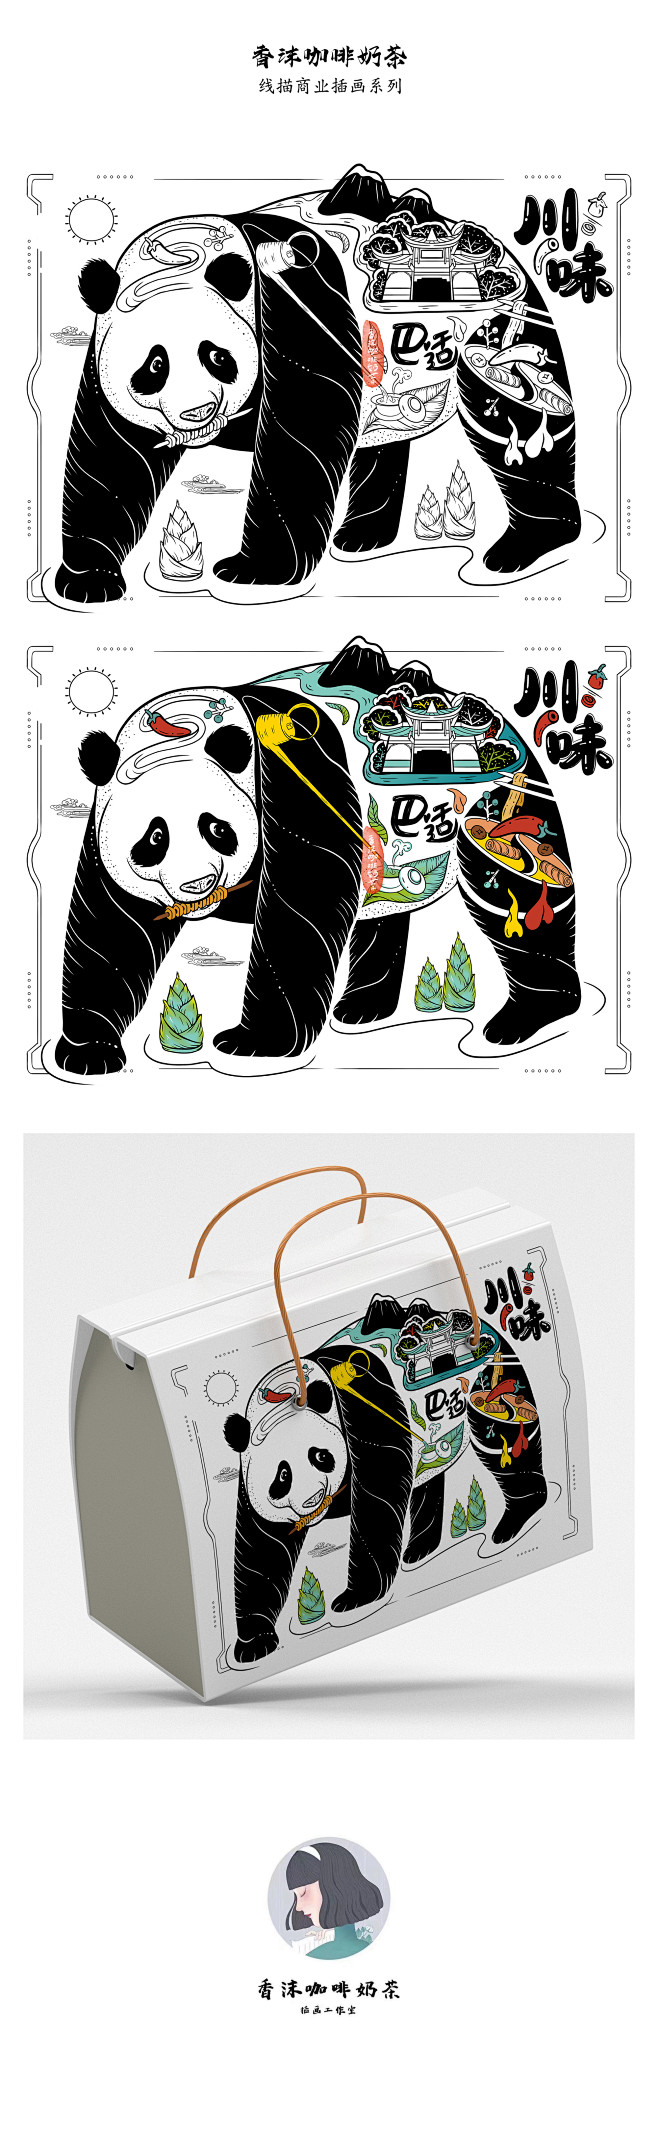 香沫咖啡奶茶线描商业包装插画-熊猫